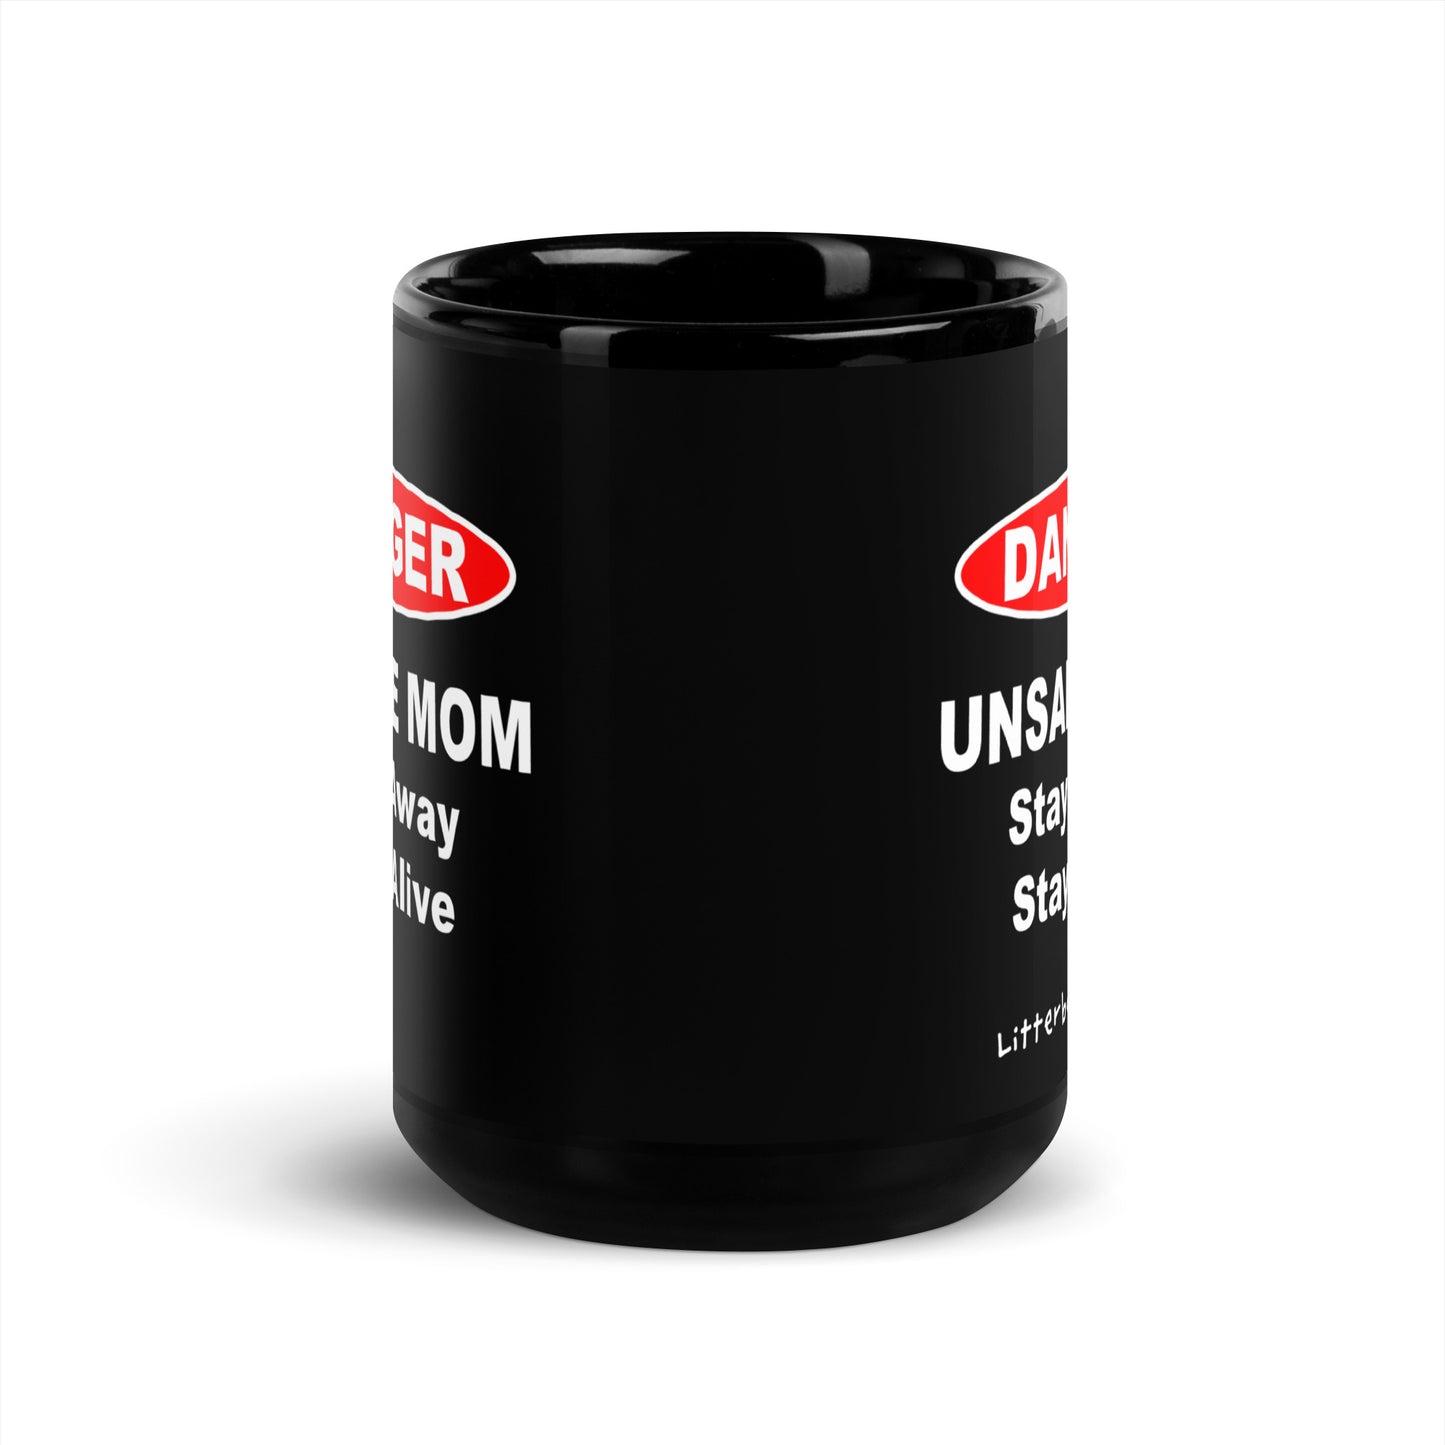 DANGER: Unsafe Mom Black Mug